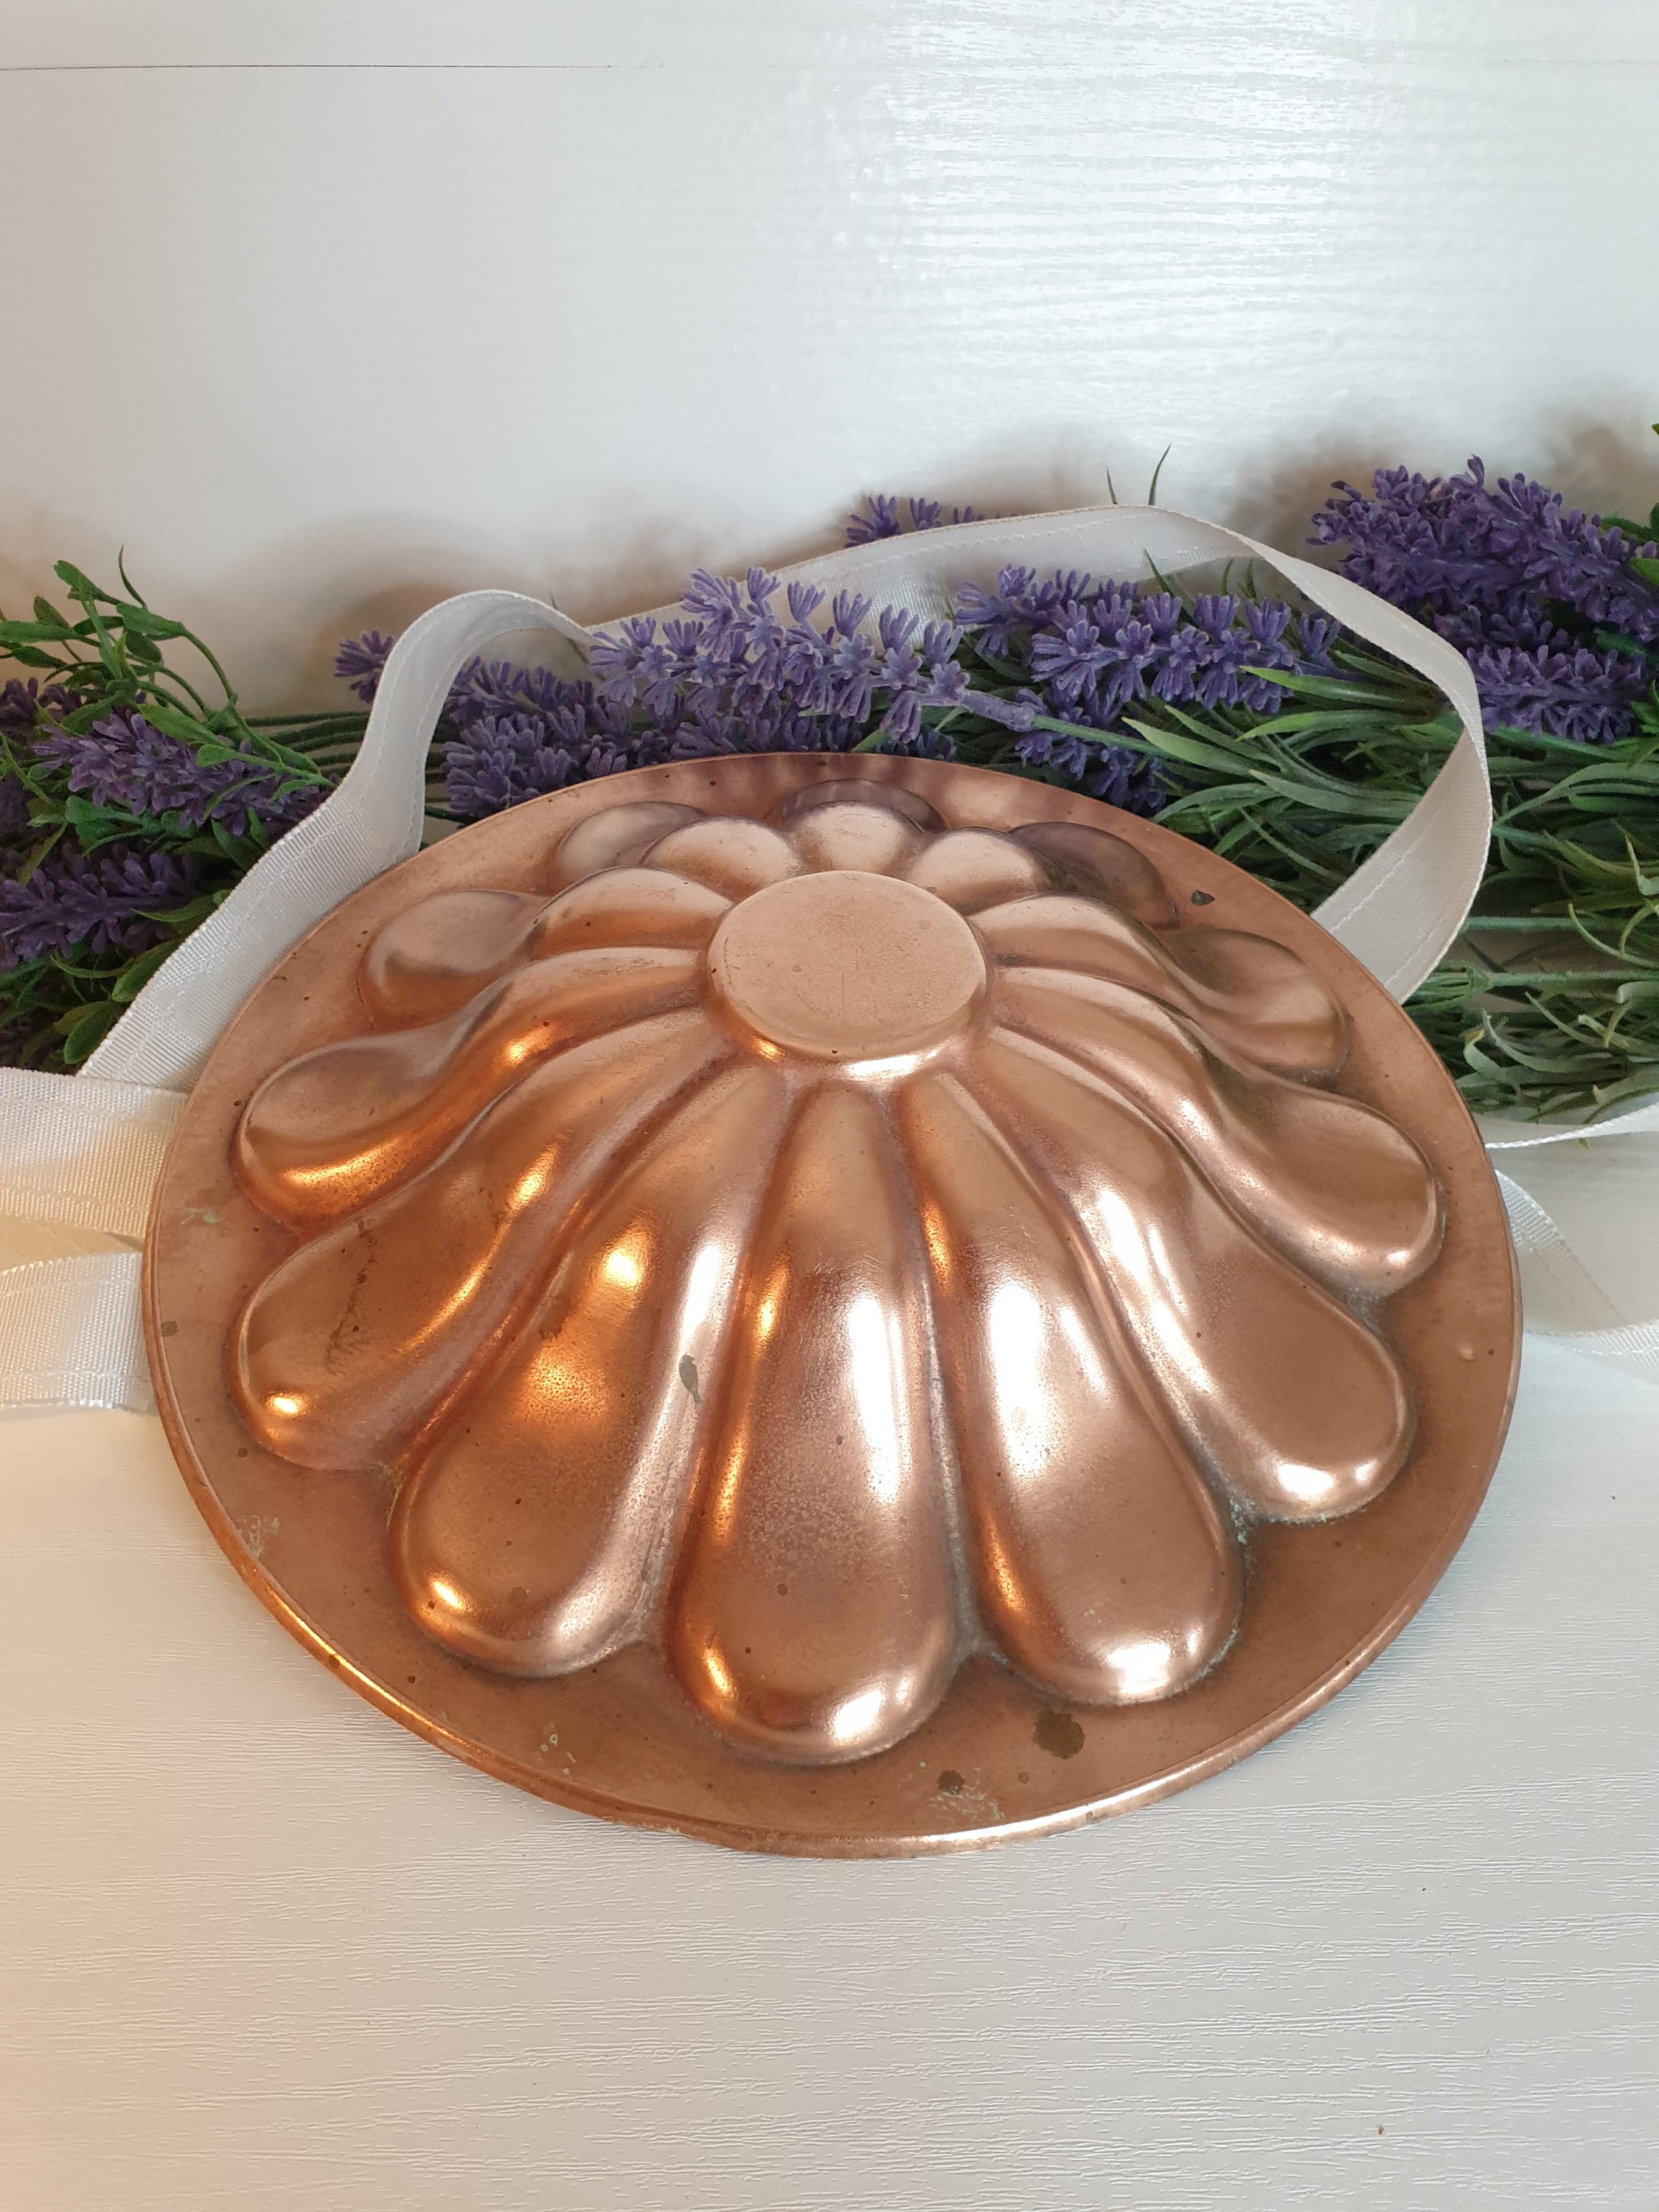 Flat Round Disc Silicone Mold Baking Tray 2 Sizes – FUNSHOWCASE